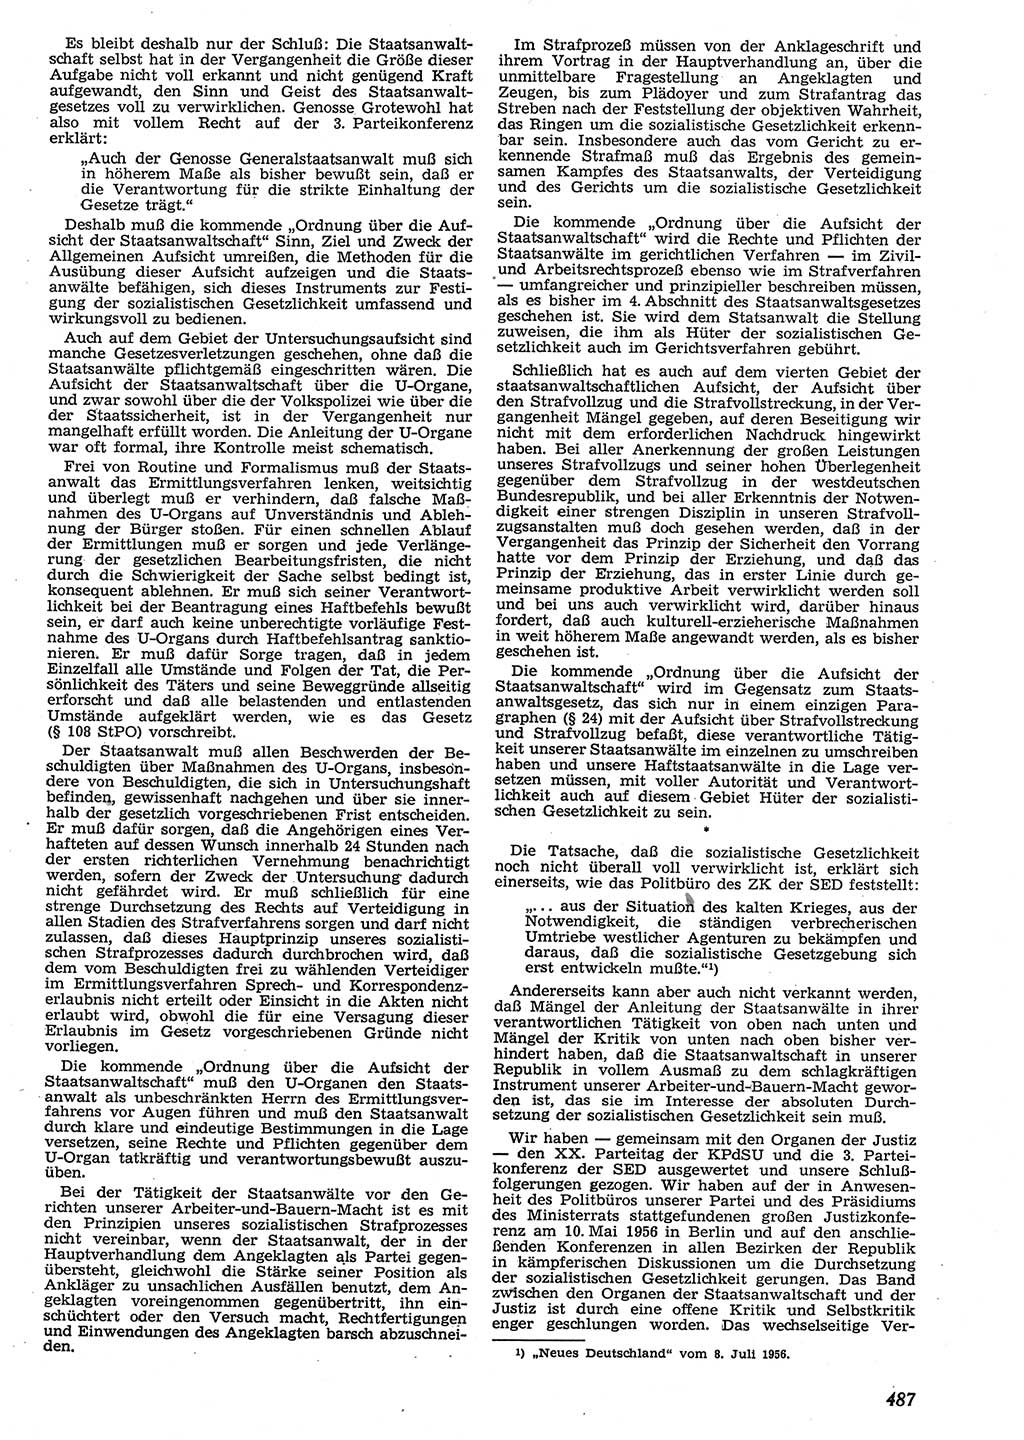 Neue Justiz (NJ), Zeitschrift für Recht und Rechtswissenschaft [Deutsche Demokratische Republik (DDR)], 10. Jahrgang 1956, Seite 487 (NJ DDR 1956, S. 487)